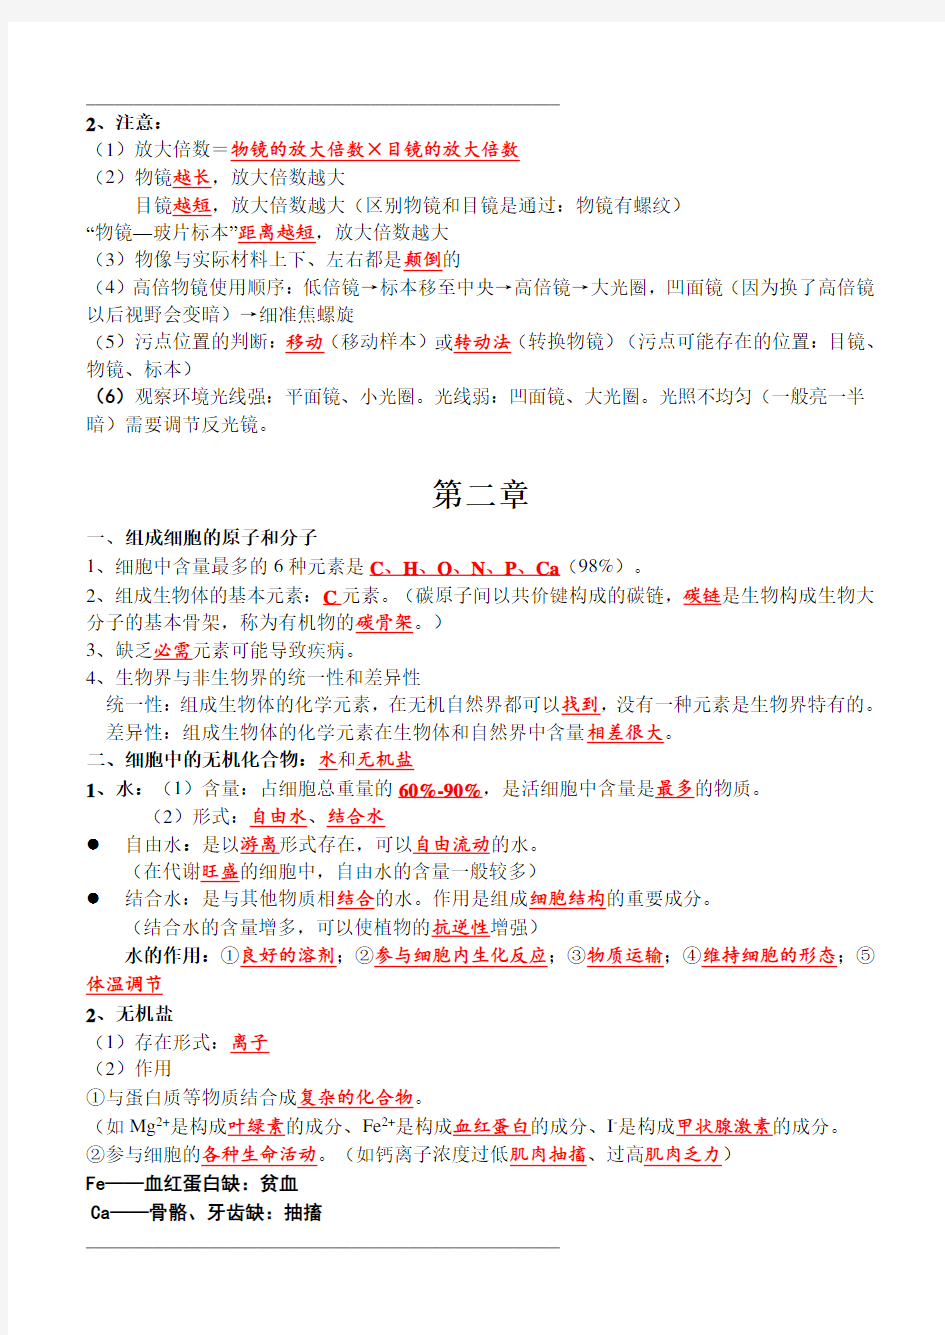 上海生物知识点整理第一册-打印版